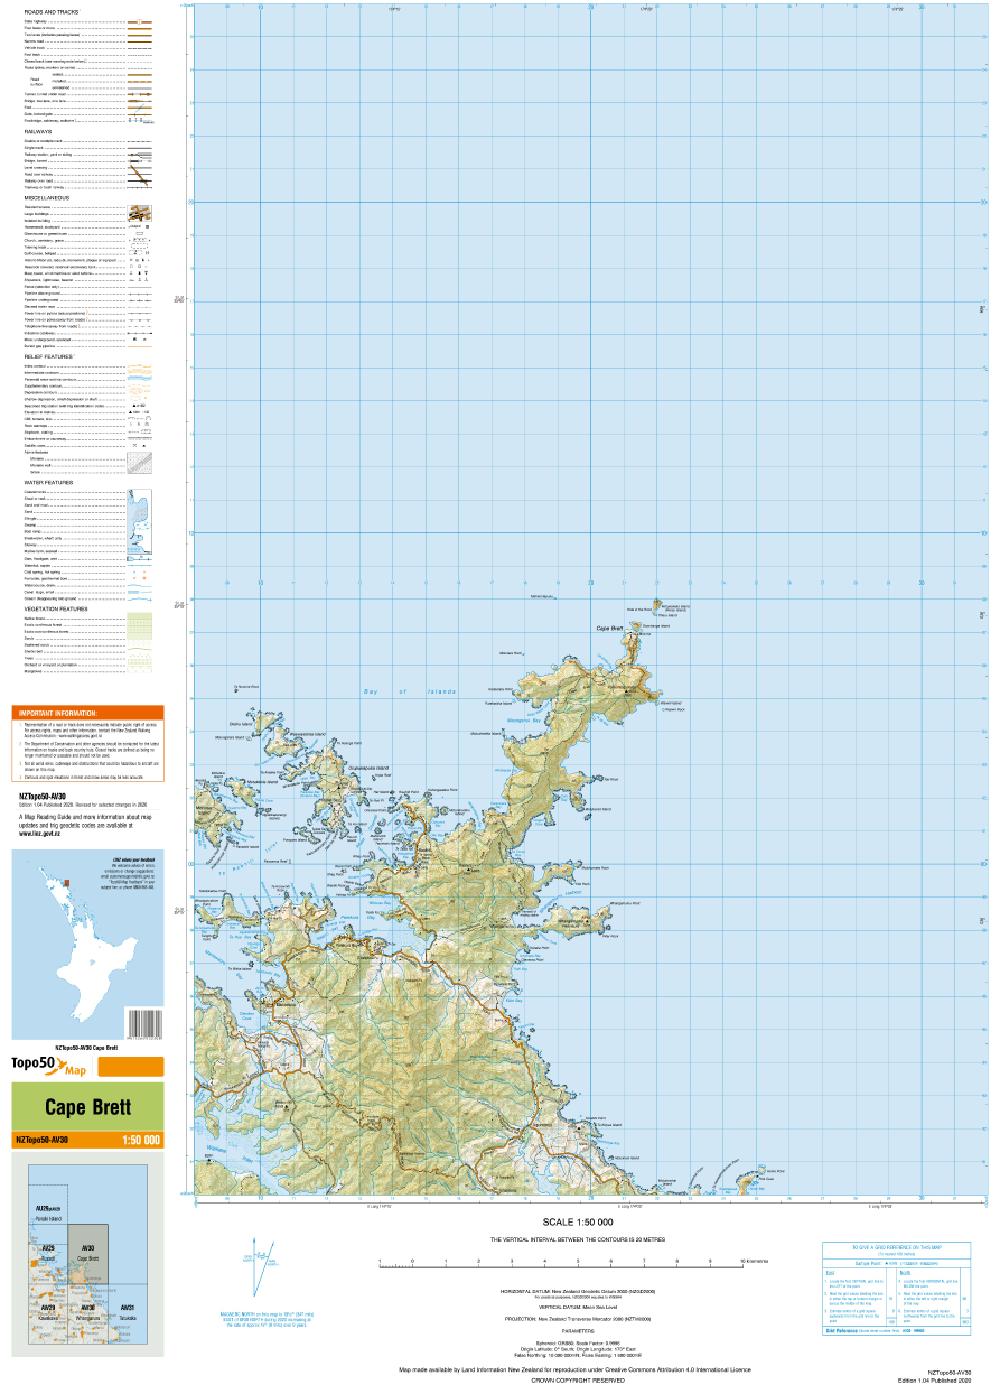 Topo map of Cape Brett